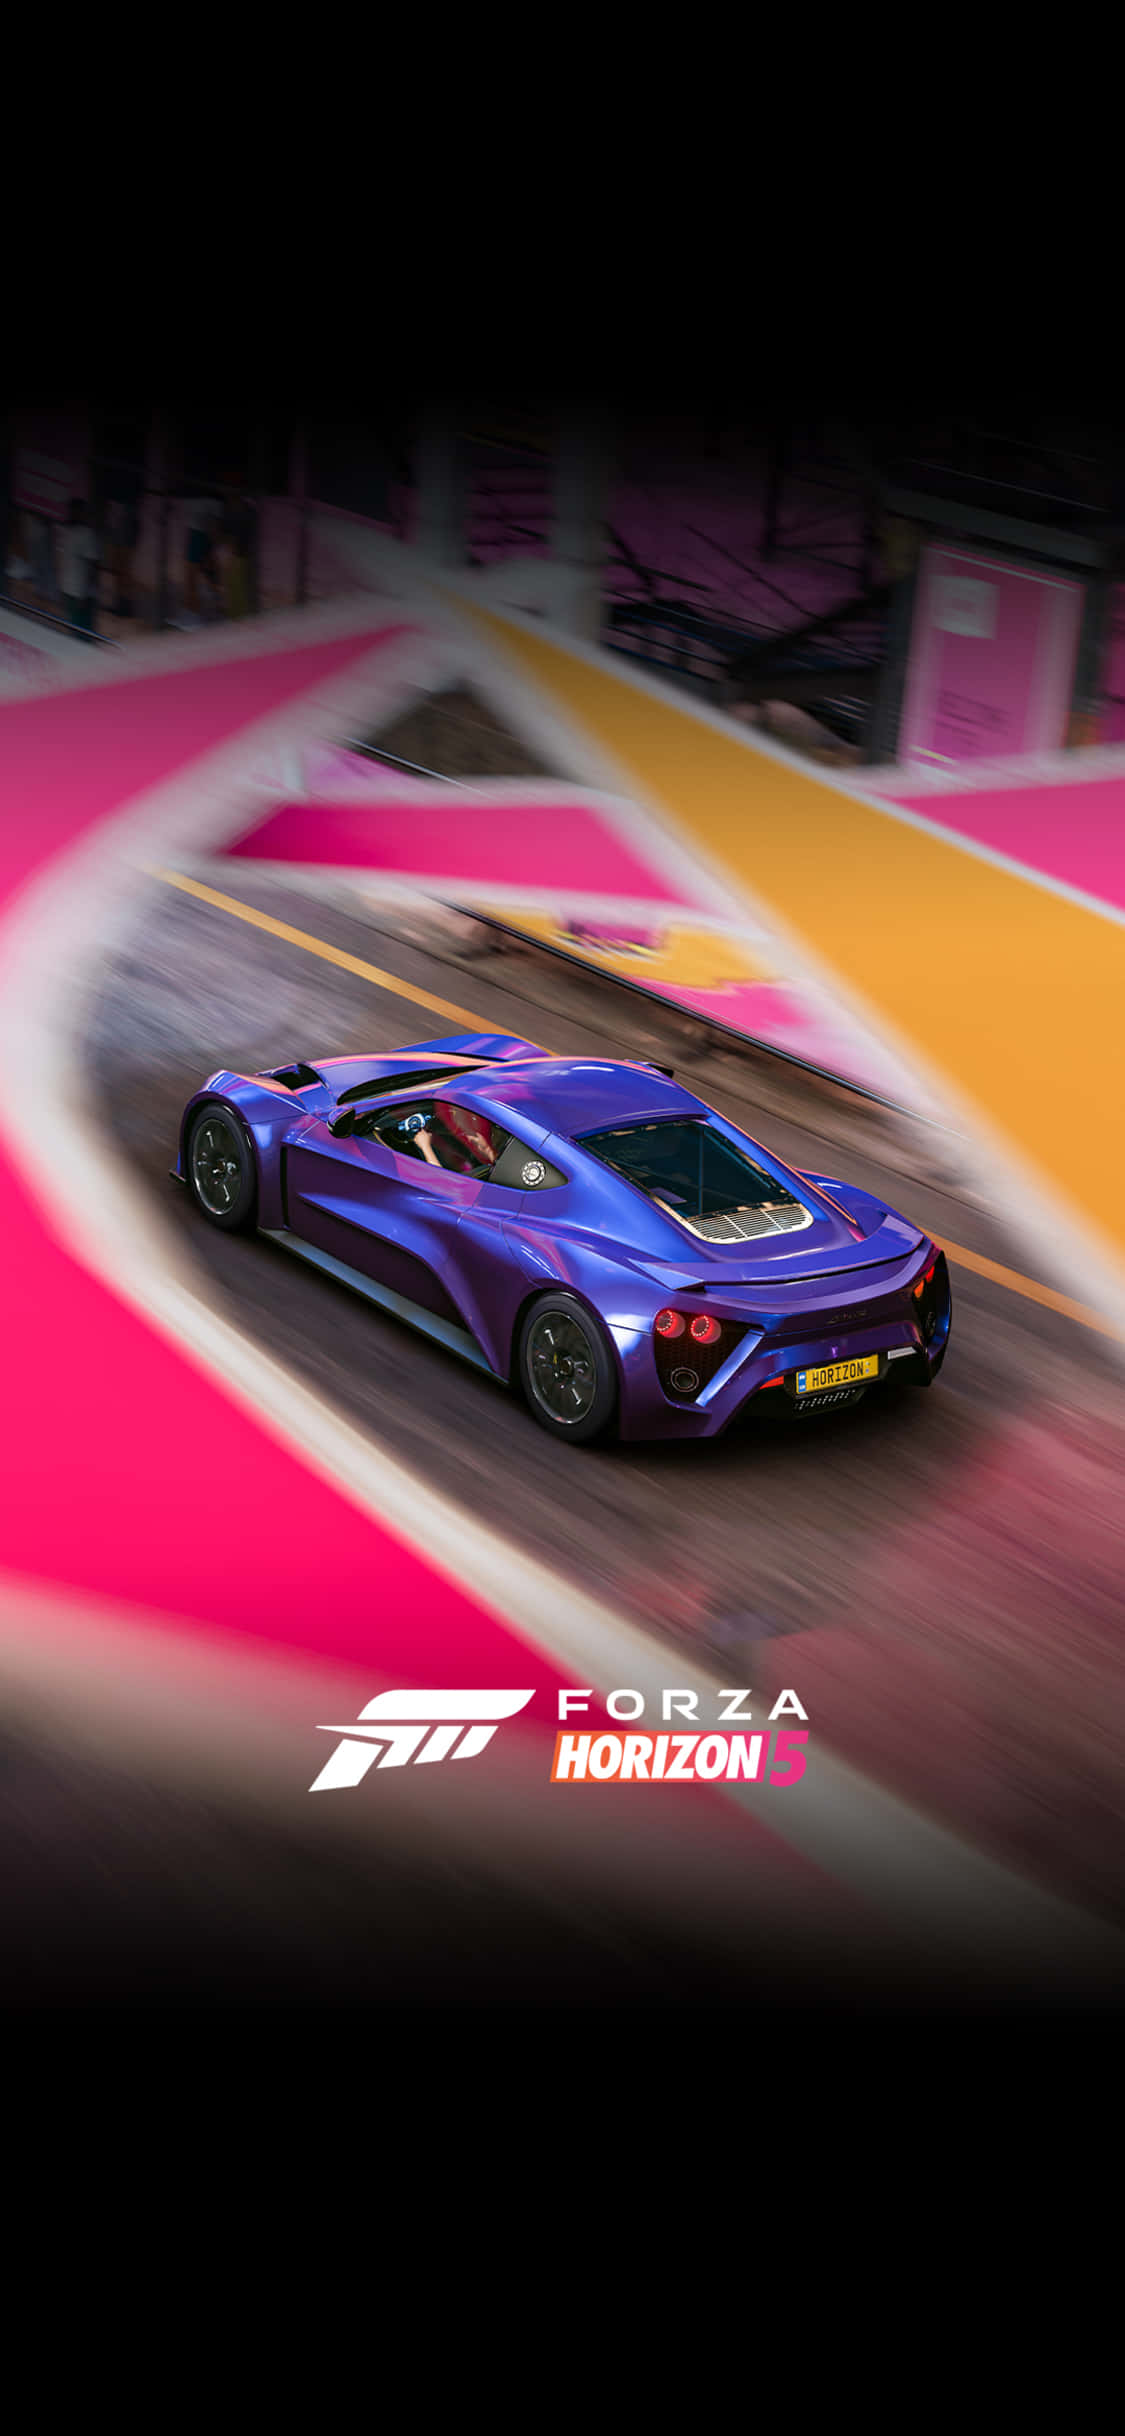 Blauerzenvo Hintergrund Für Iphone X Und Forza Motorsport 7.